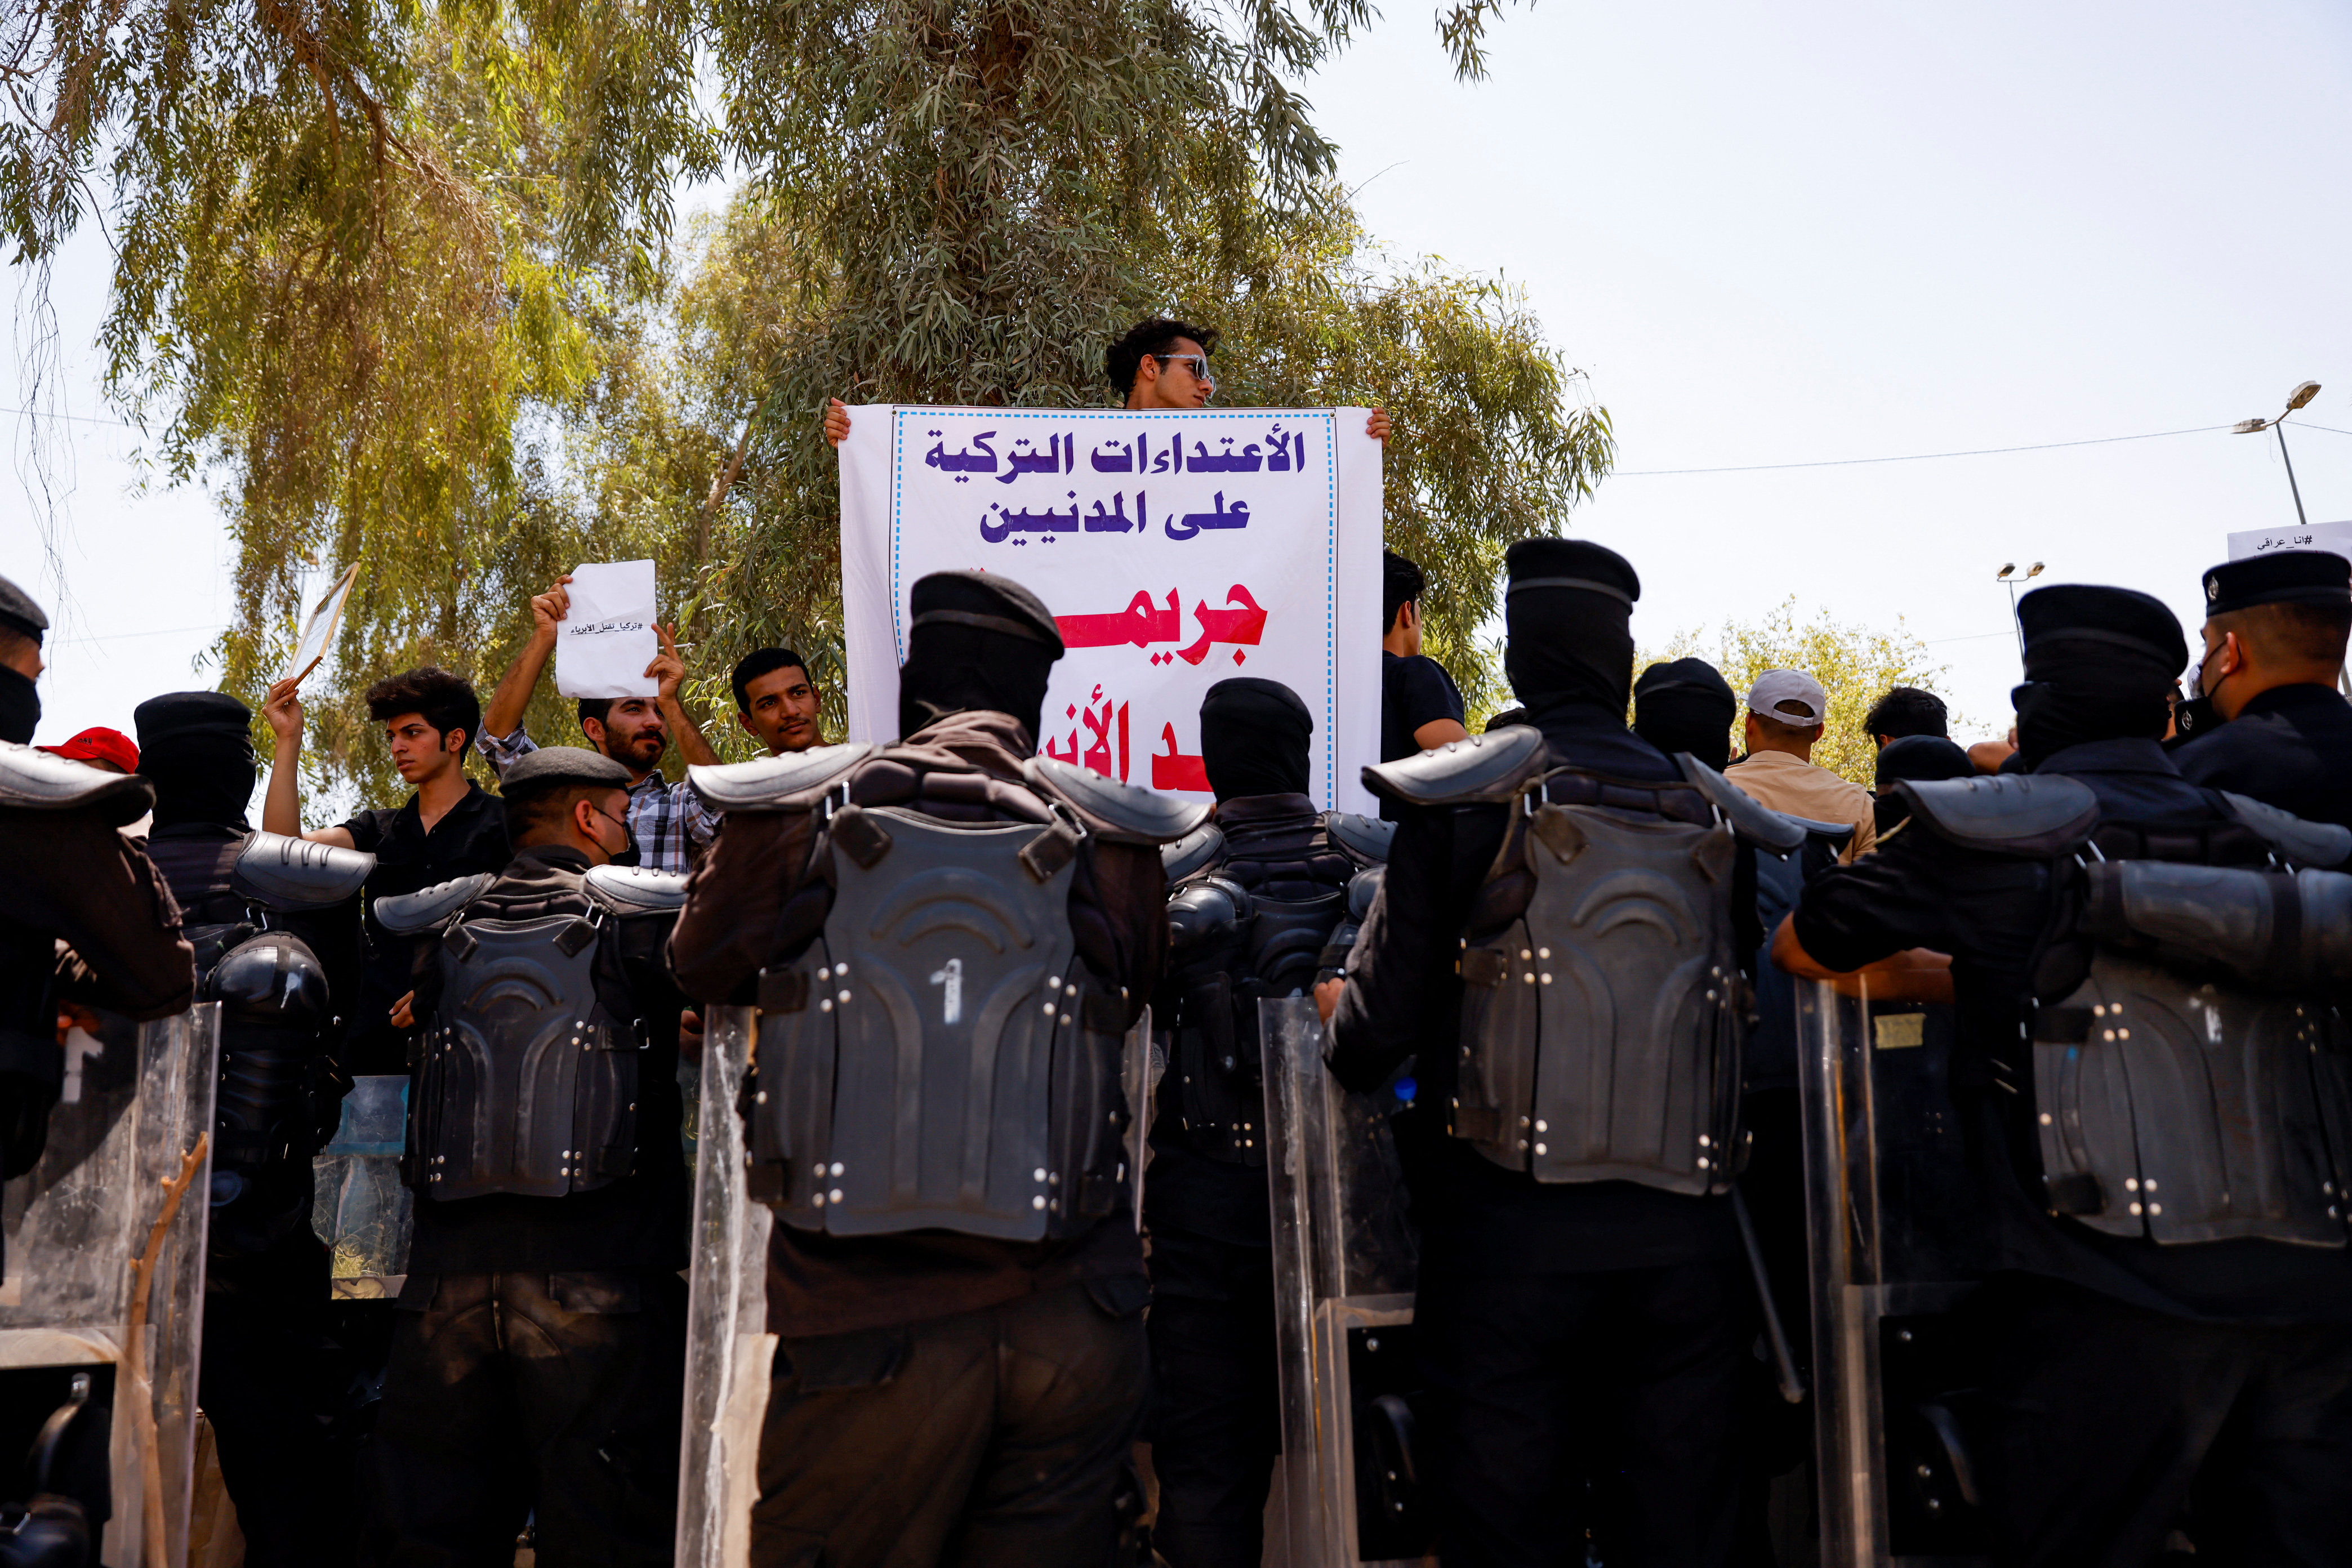 العراق يطالب تركيا بإخراج قواتها من أراضيه ويسلم سفيرها مذكرة احتجاج 